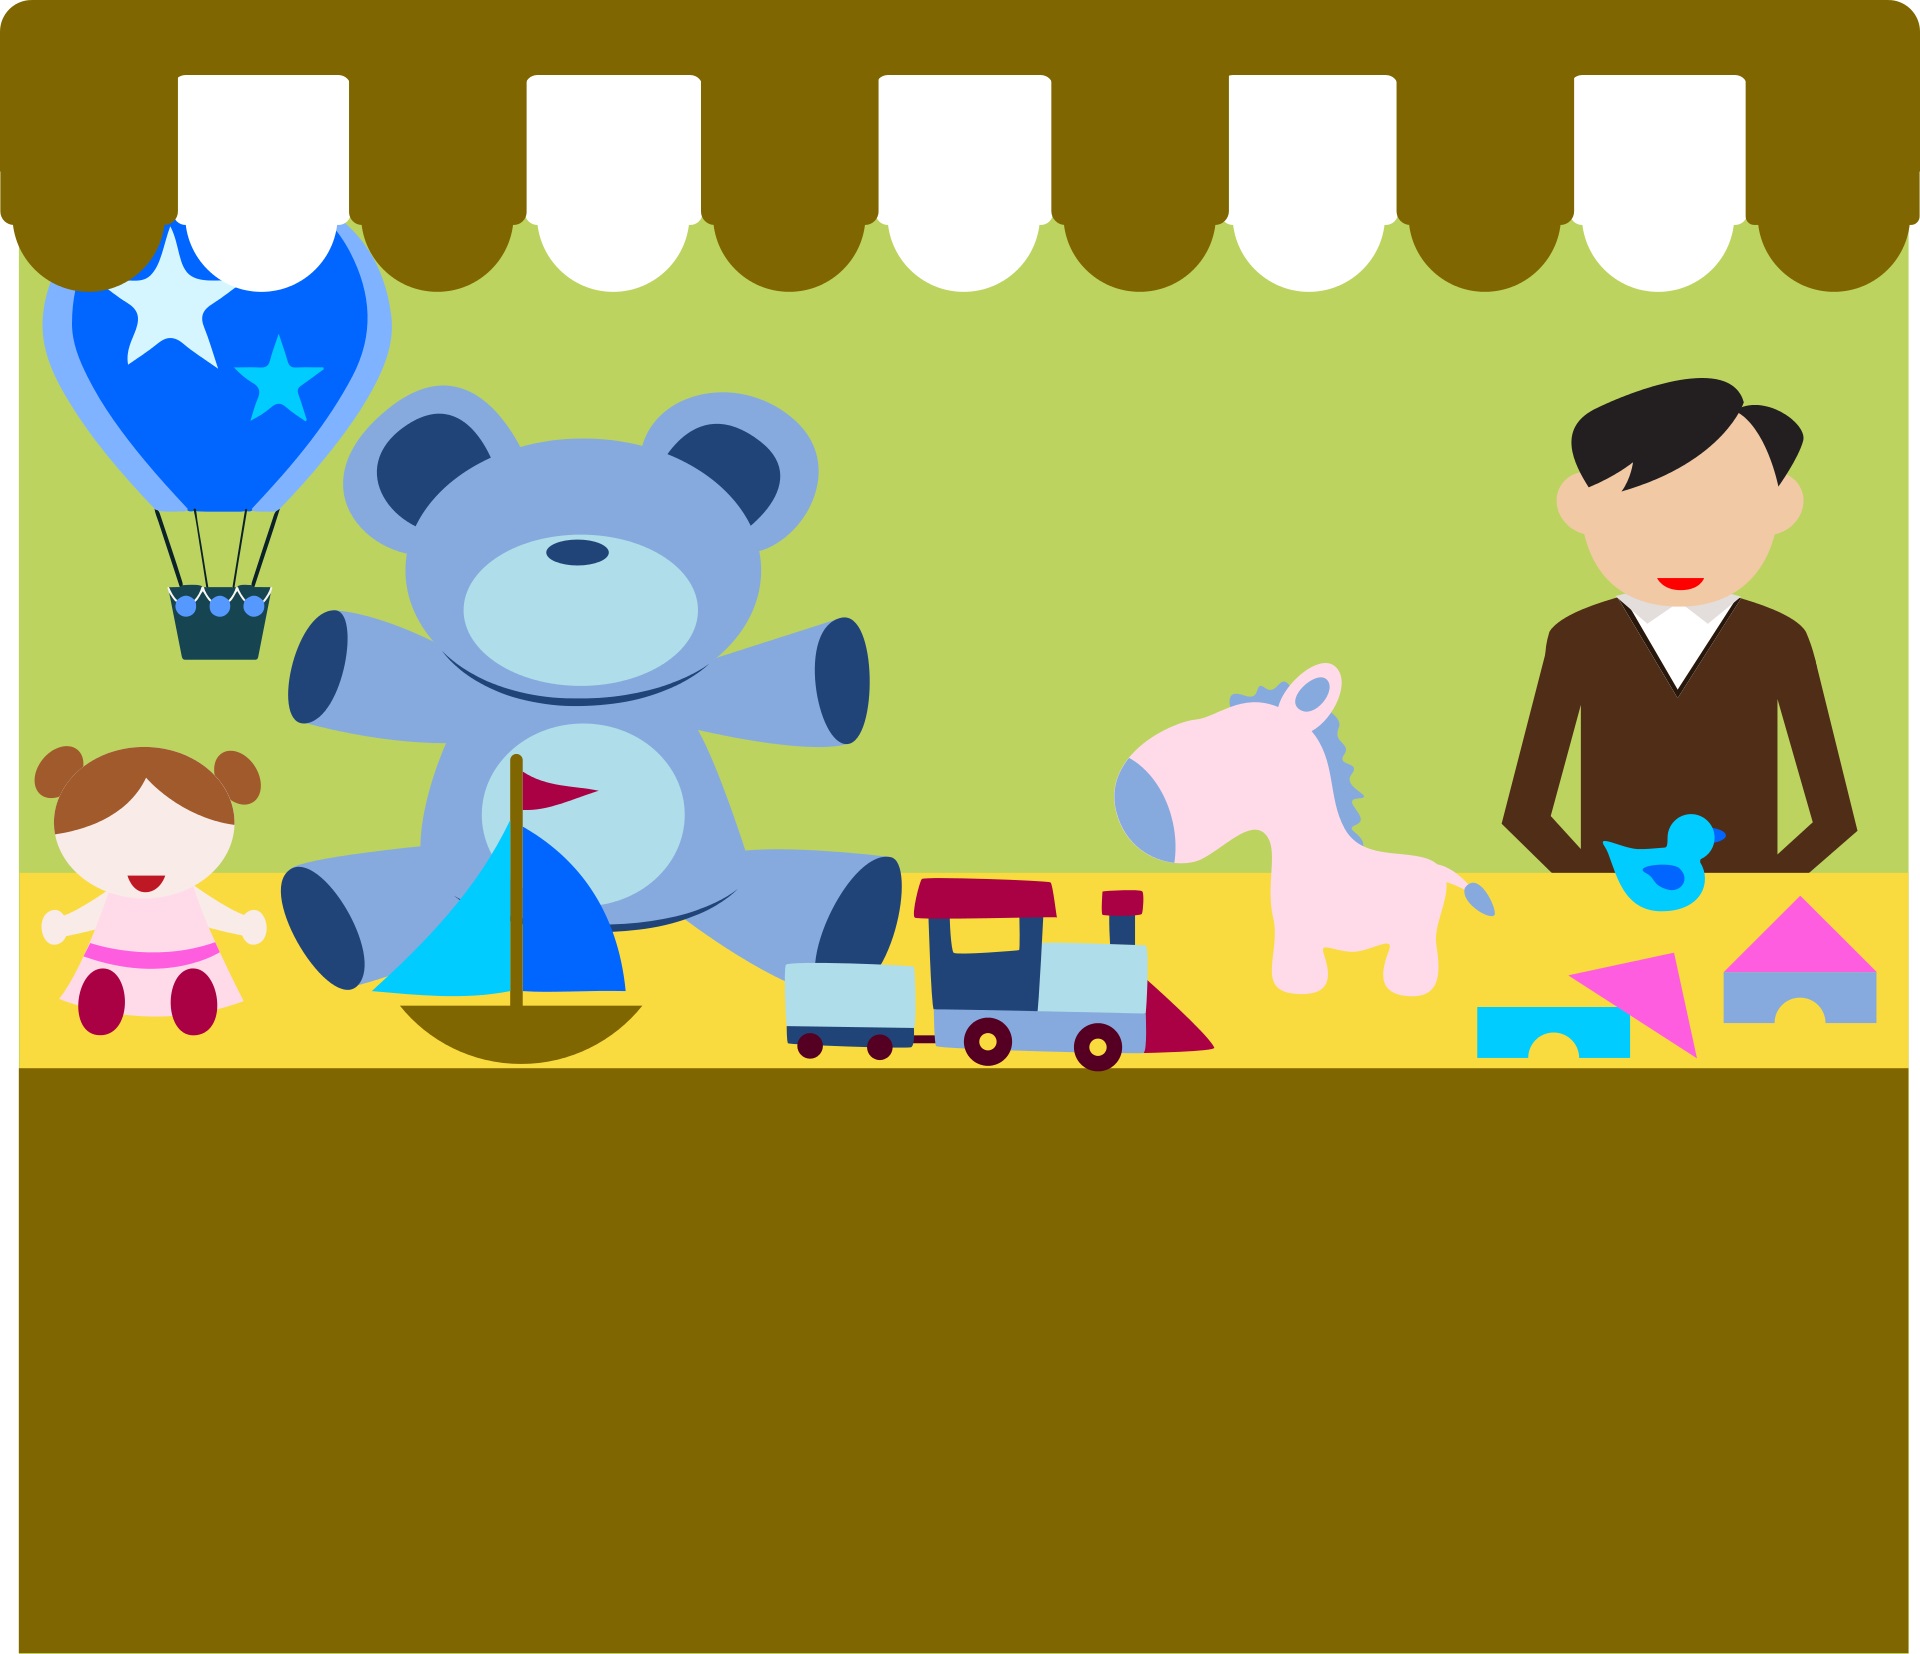 La imagen muestra un dibujo de una tienda con juguetes en el mostrador